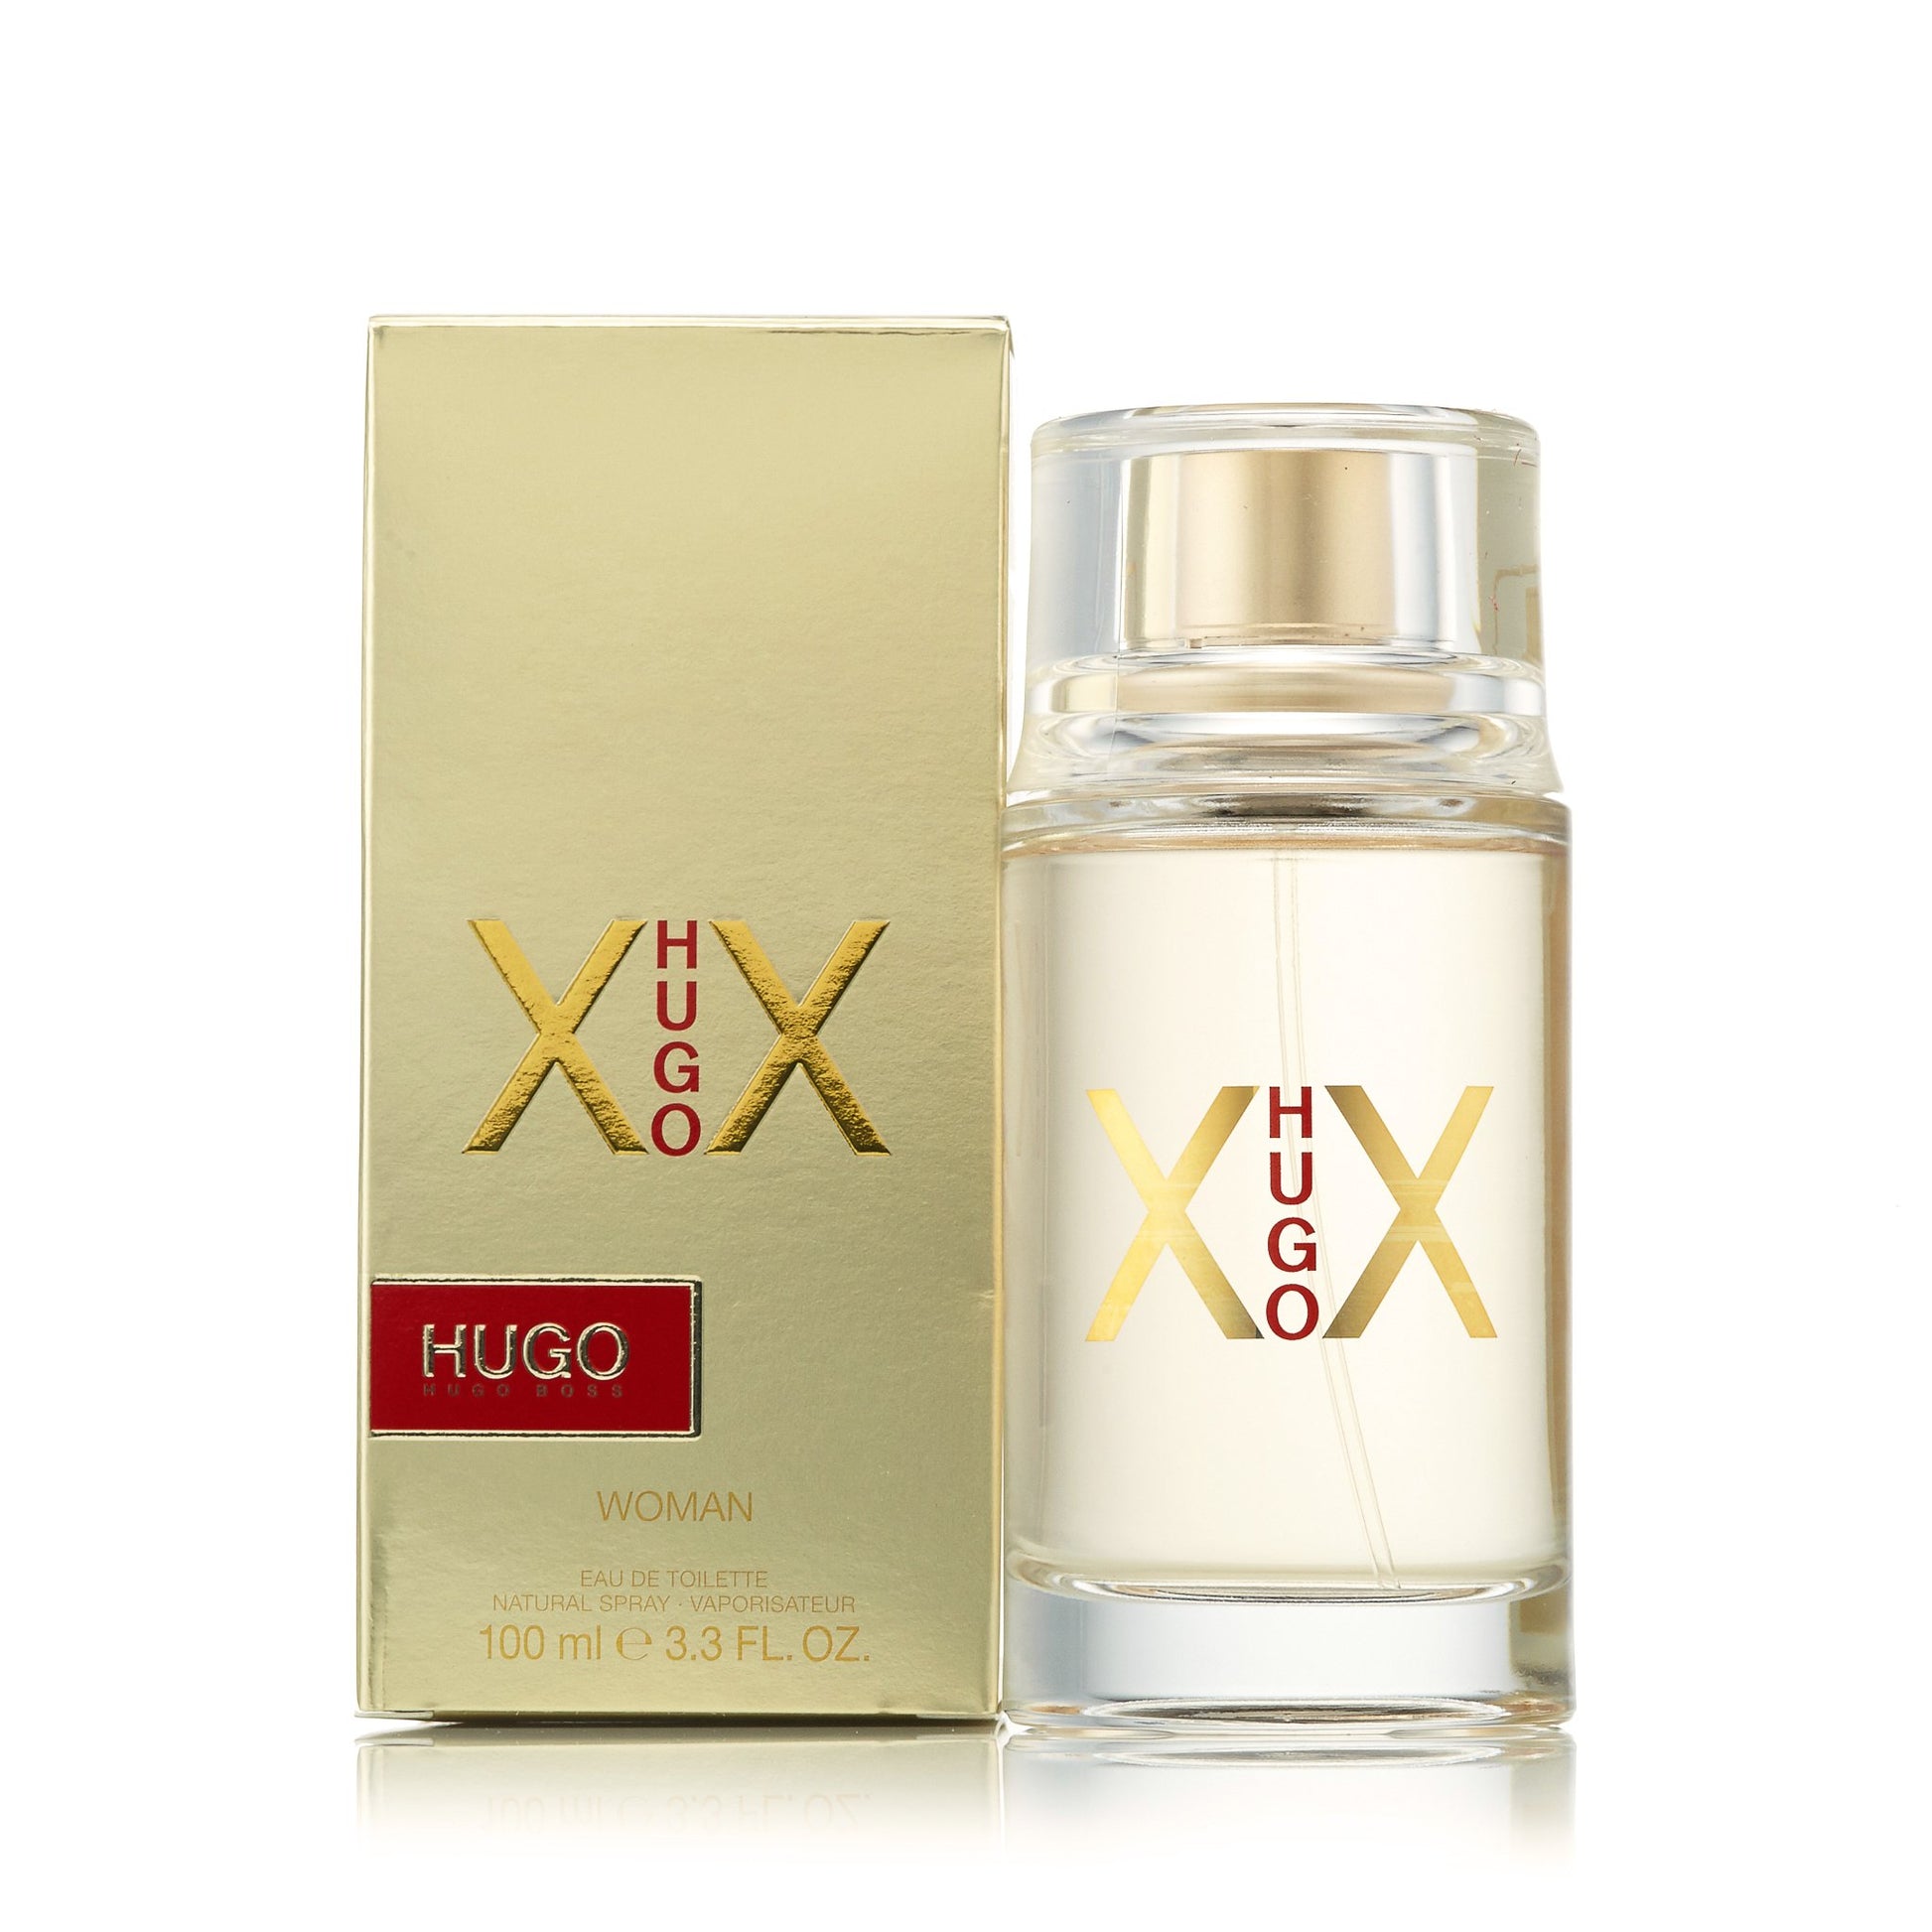 Hugo XX Eau de Toilette Spray for Women by Hugo Boss 3.4 oz. Click to open in modal